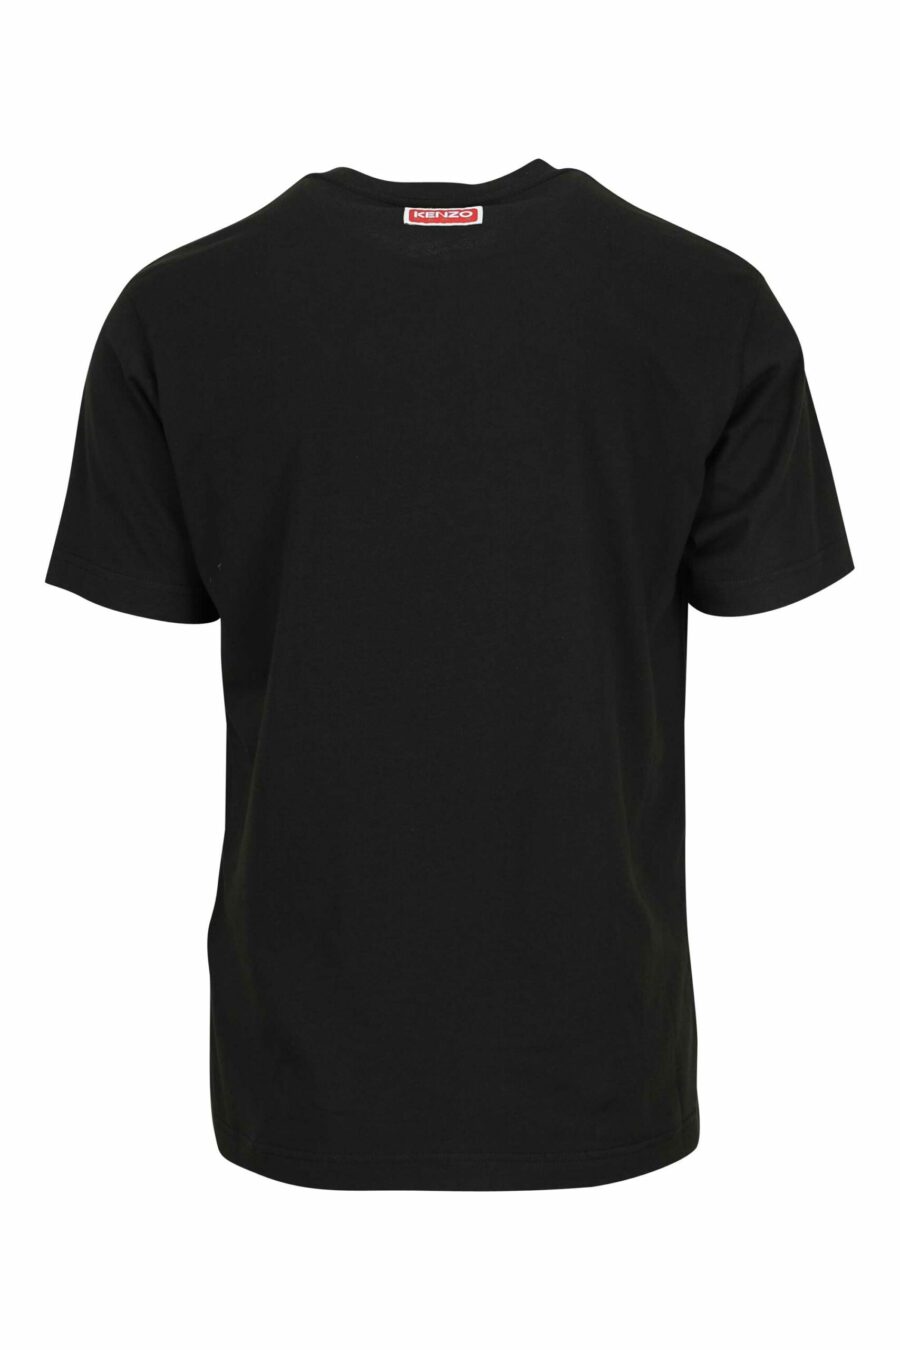 Camiseta negra con maxilogo tigre multicolor - 3612230625112 1 scaled